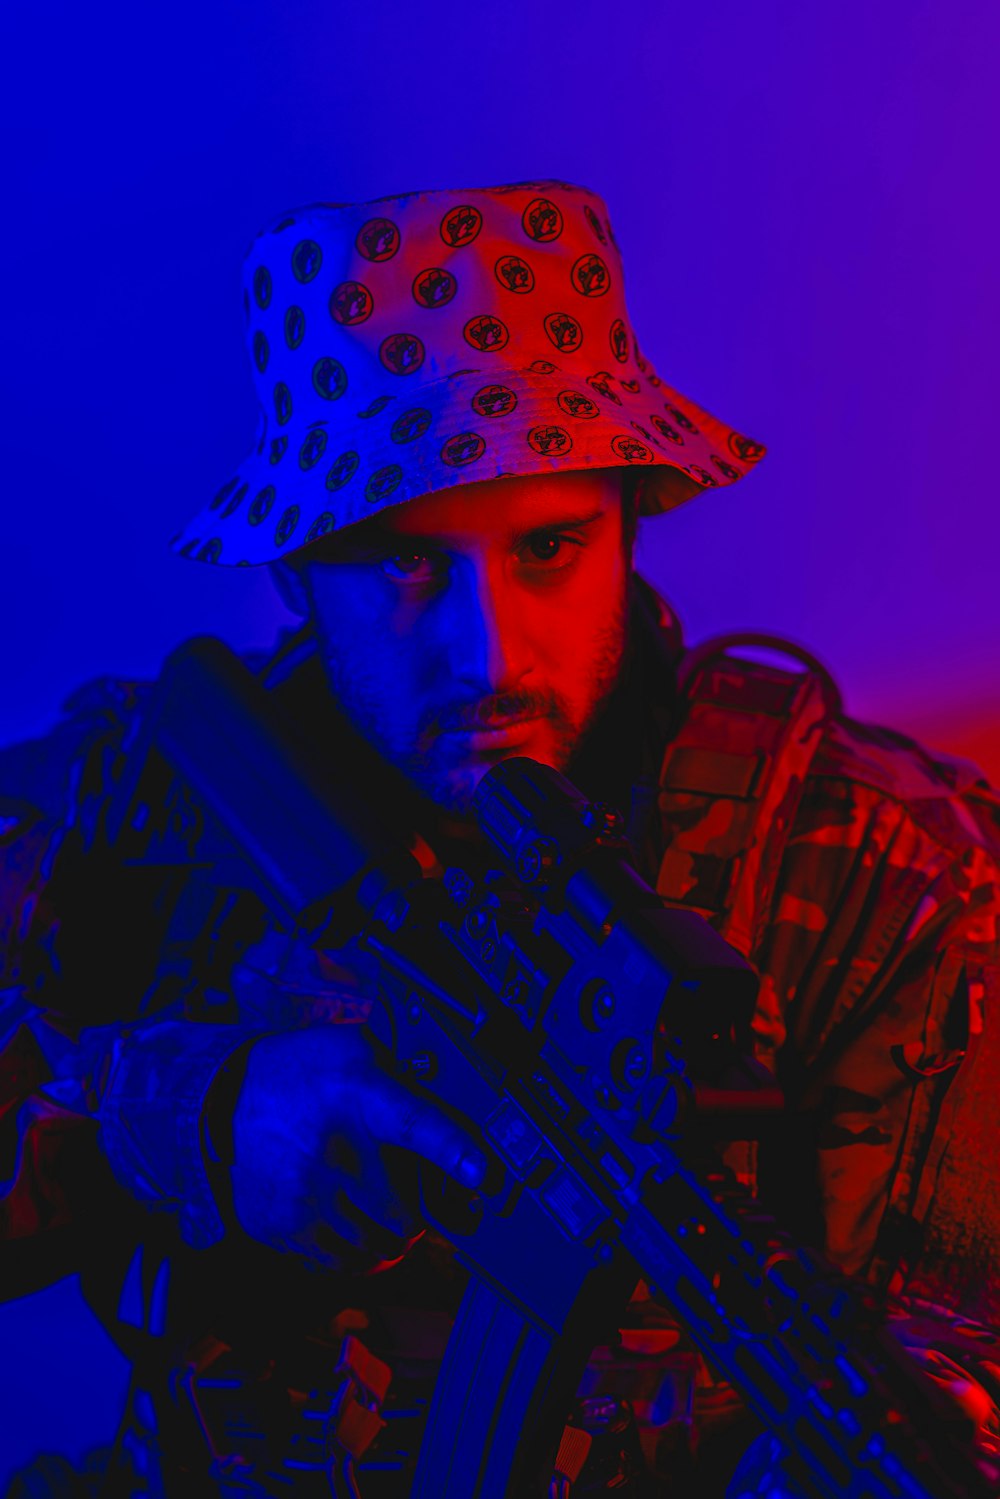 a man in a hat holding a machine gun